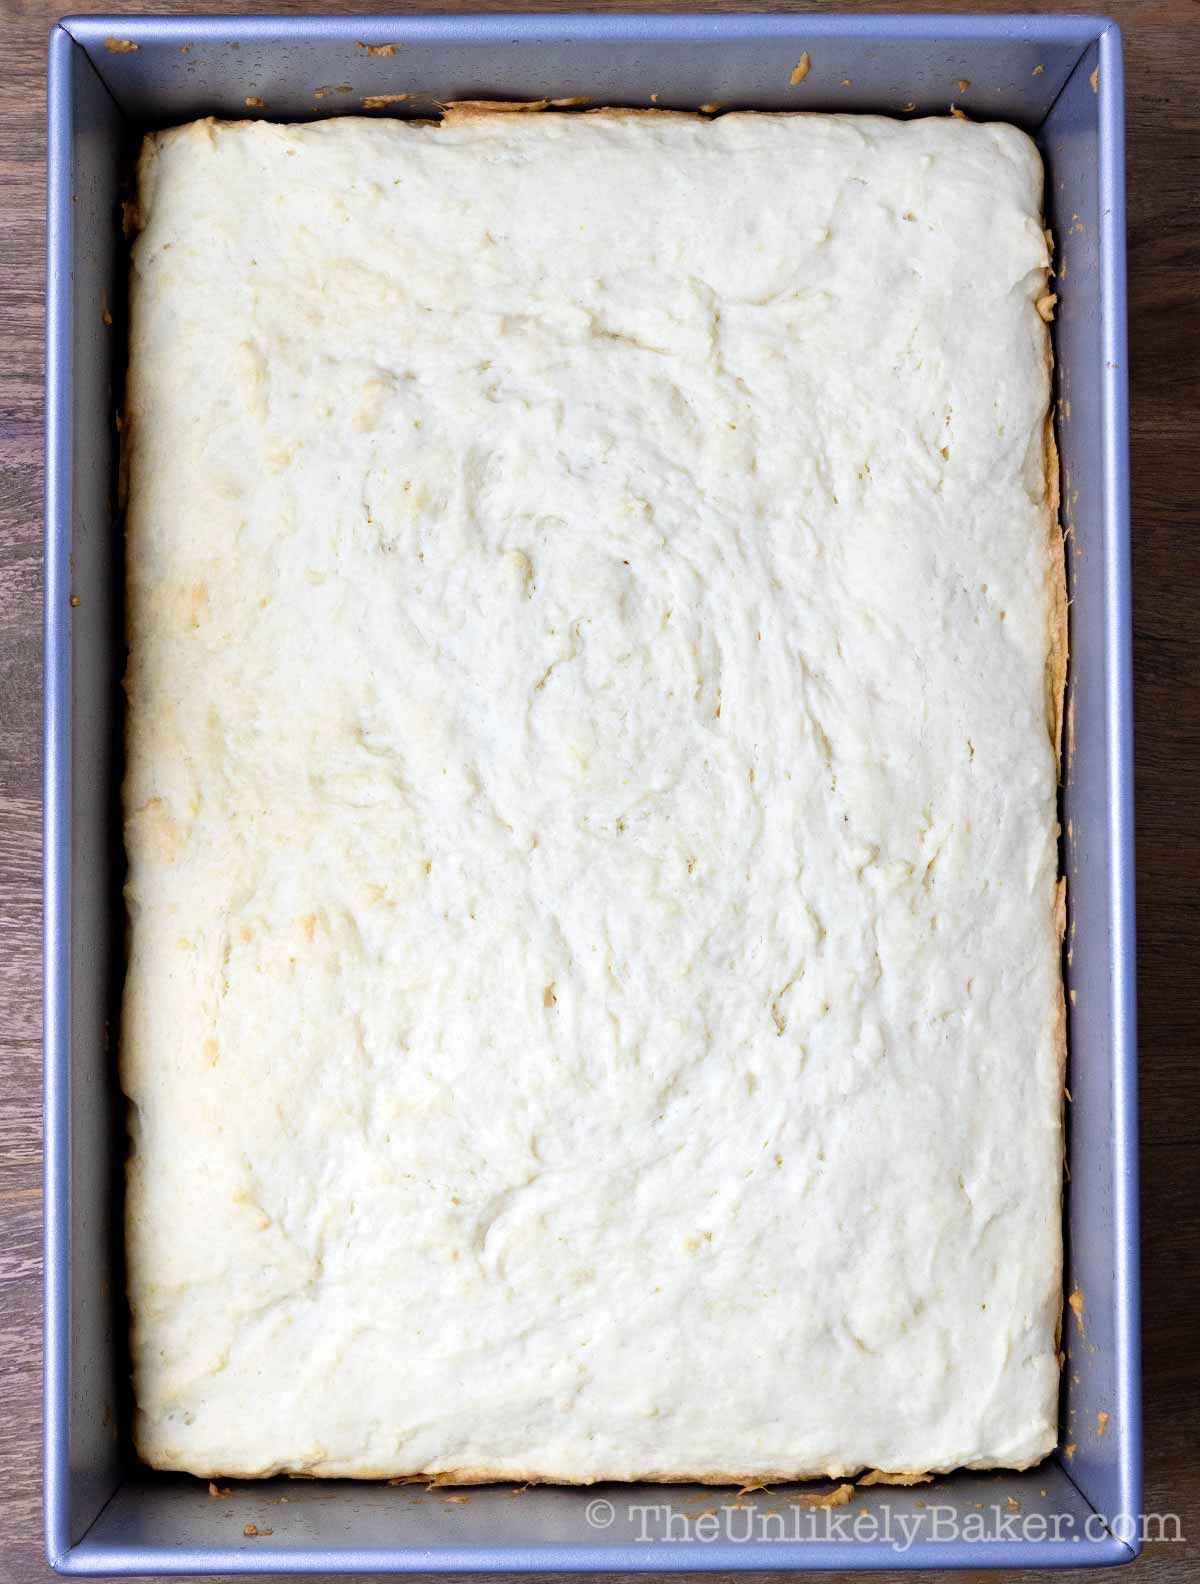 Bake until golden brown at the edges